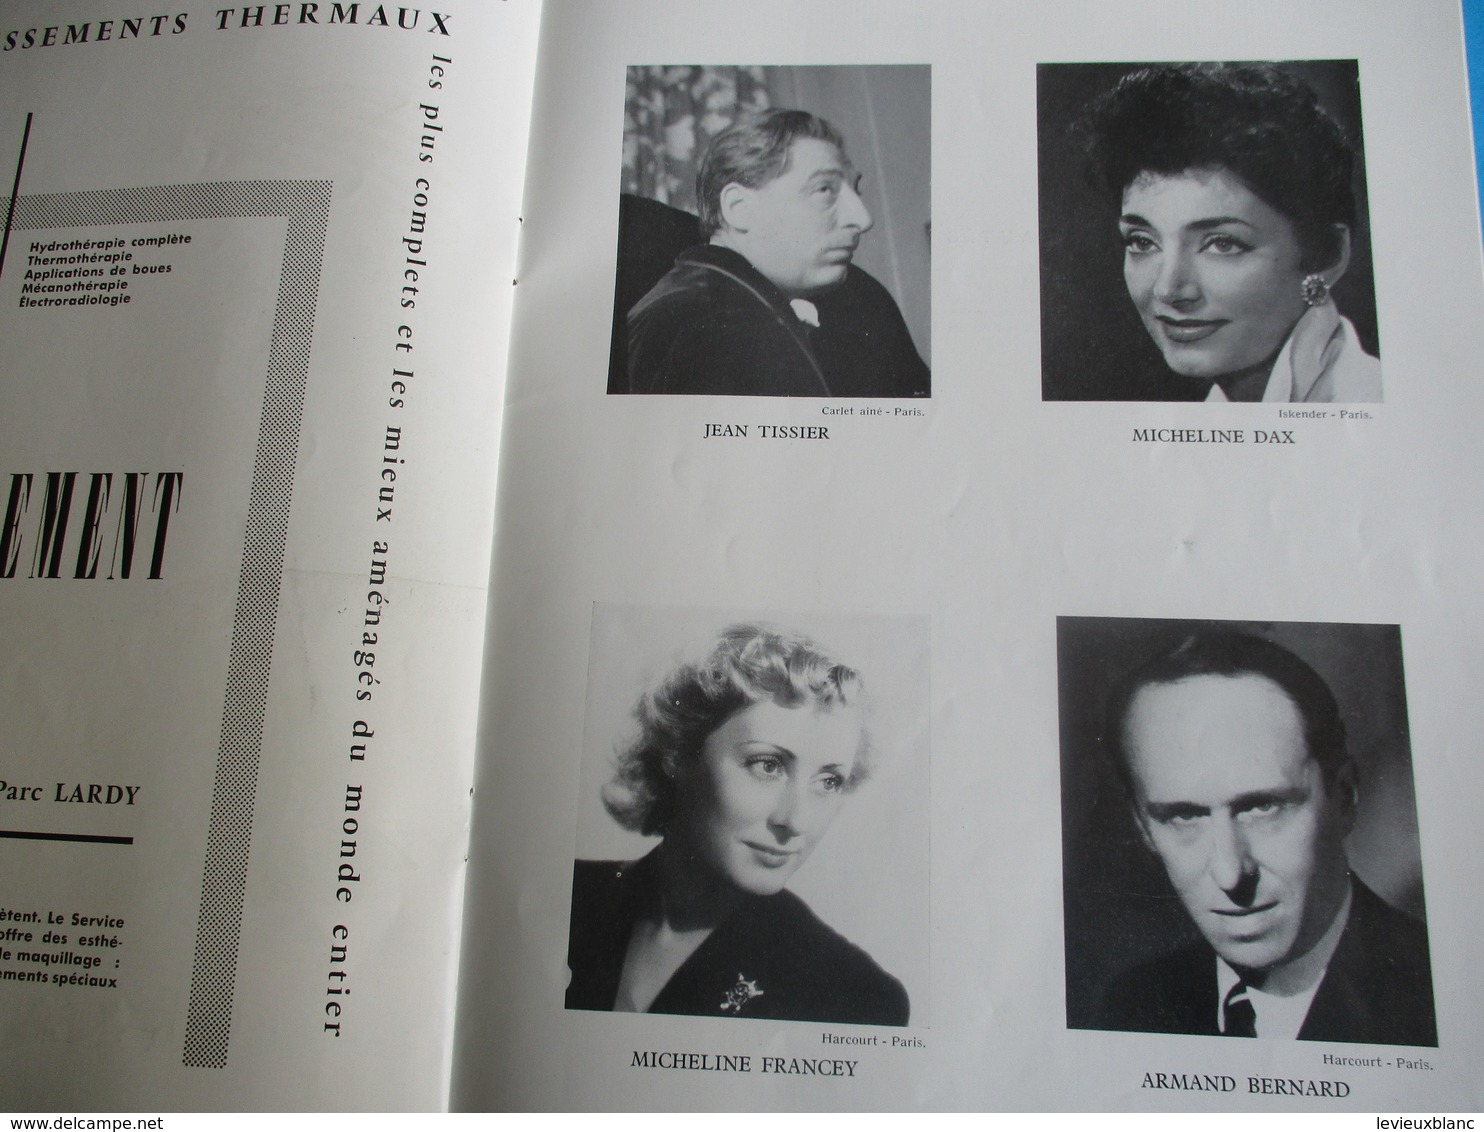 Théâtre des Fleurs/Grand Casino de VICHY/Saison artistique/R Lamoureux,B Brunoy,M Sologne,J Poiret, etc/ 1957    PROG178